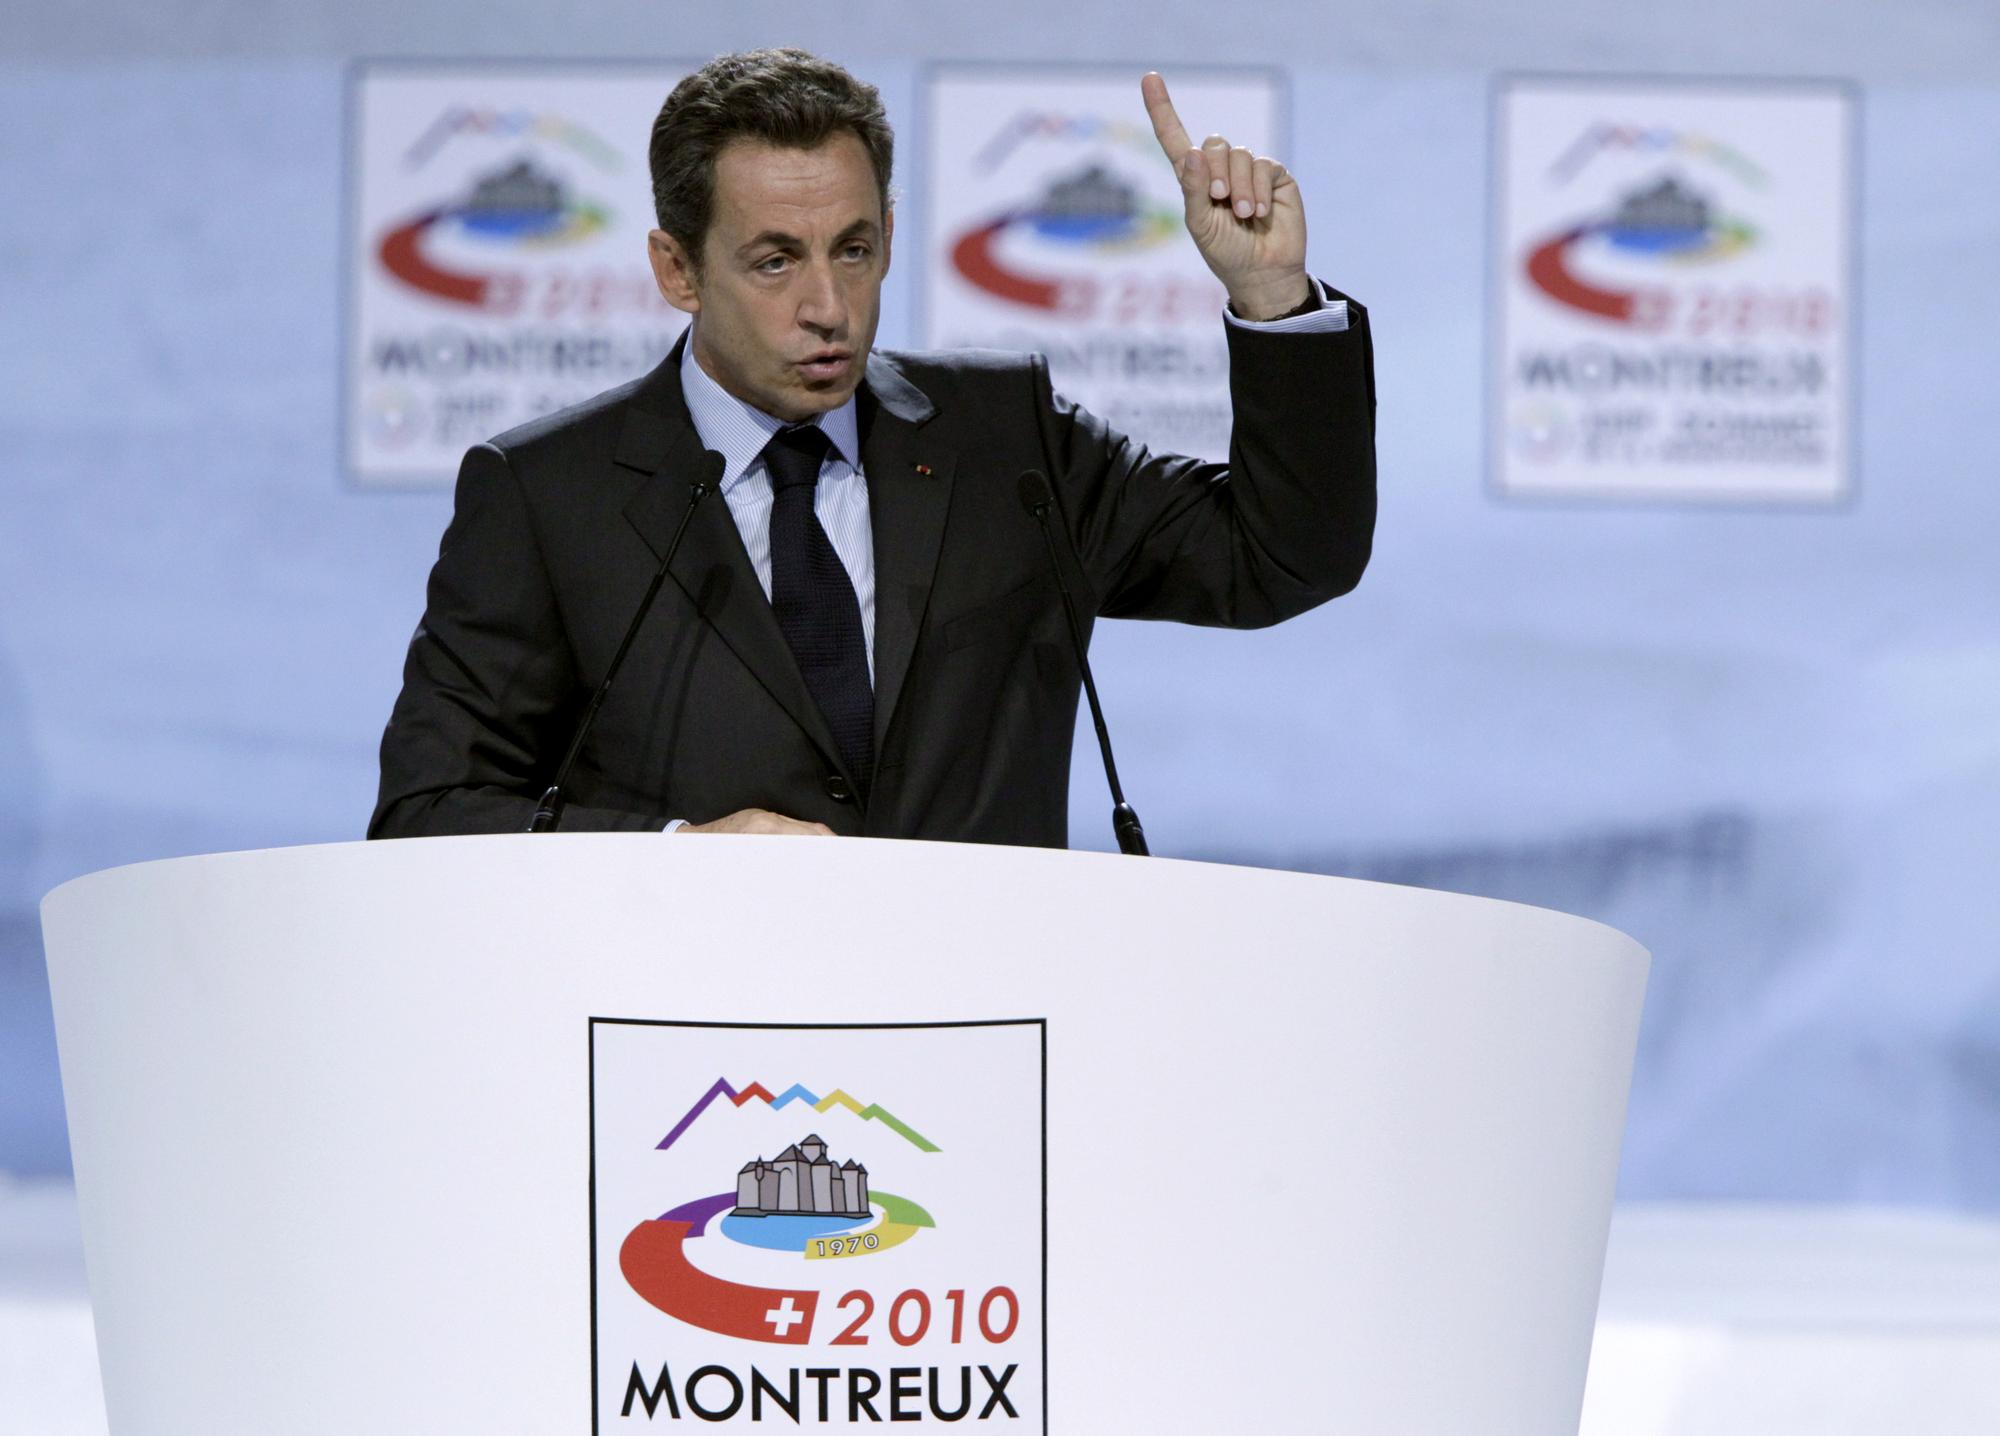 Le président Nicolas Sarkozy ne veut pas reproduire les erreurs du passé en matière de gouvernance économique. [REUTERS - � Denis Balibouse / Reuters]